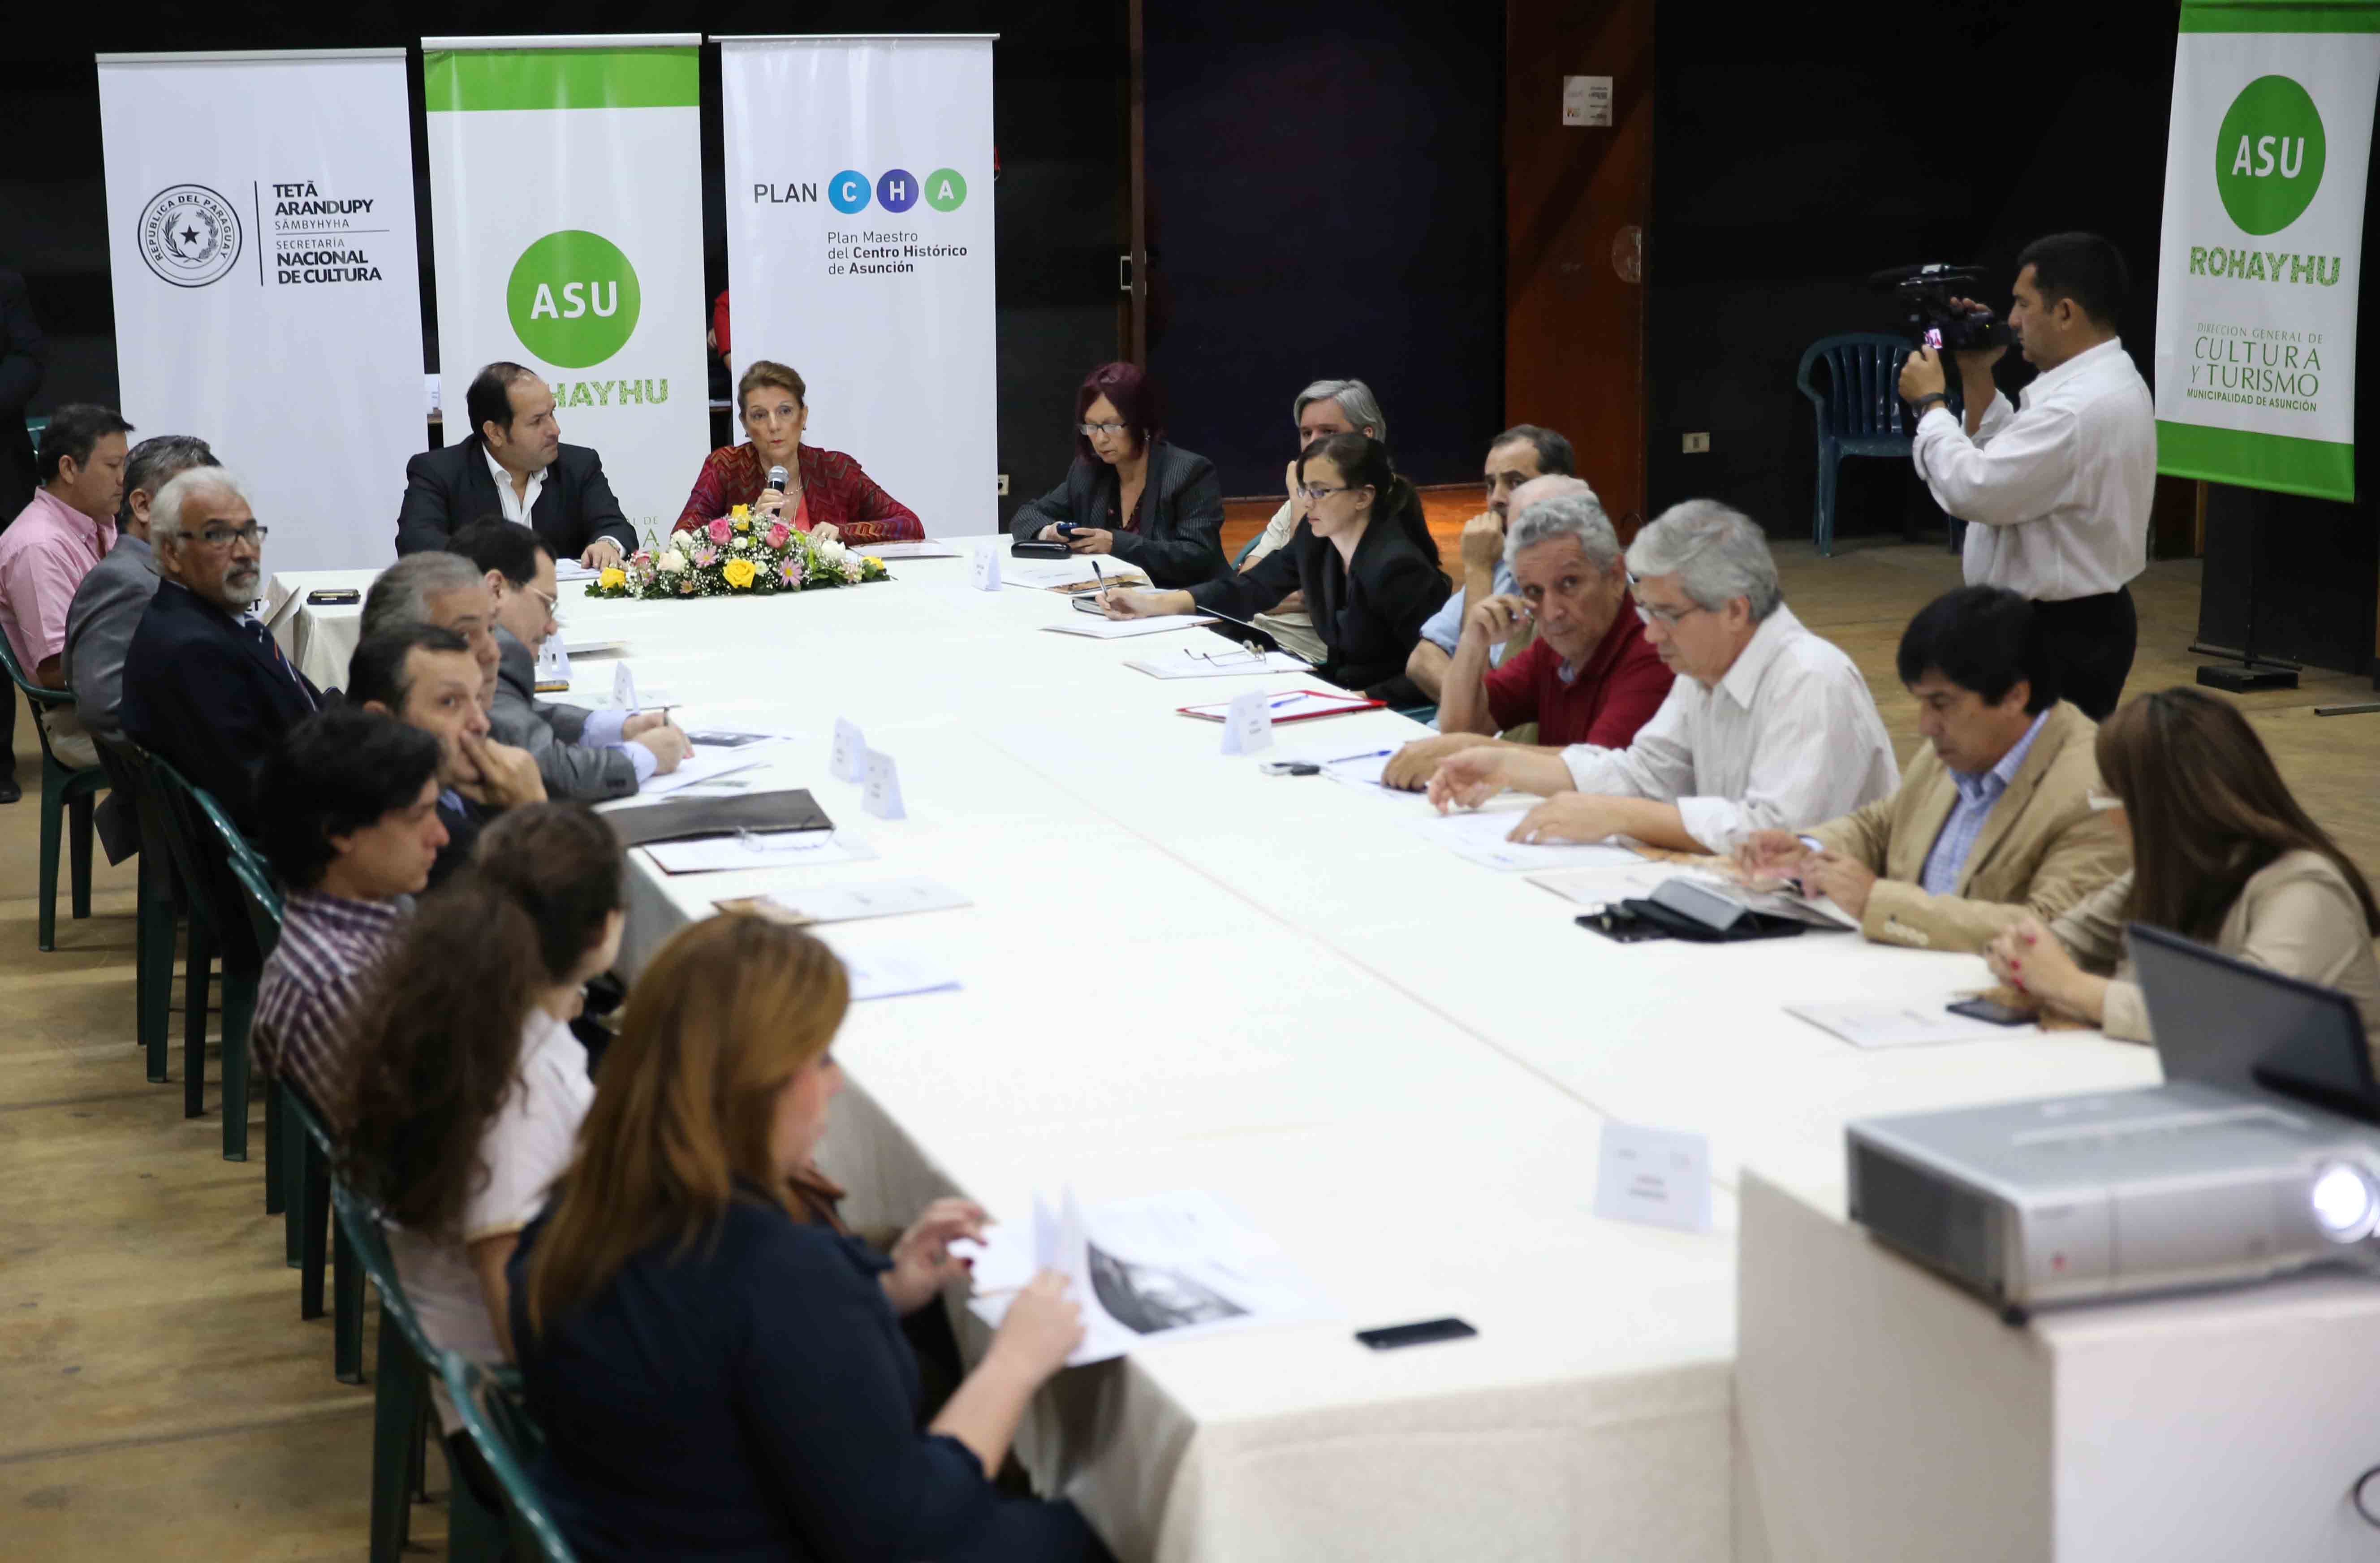 Formadores de opinión y periodistas debatieron con representantes de la Alianza por el Plan CHA imagen